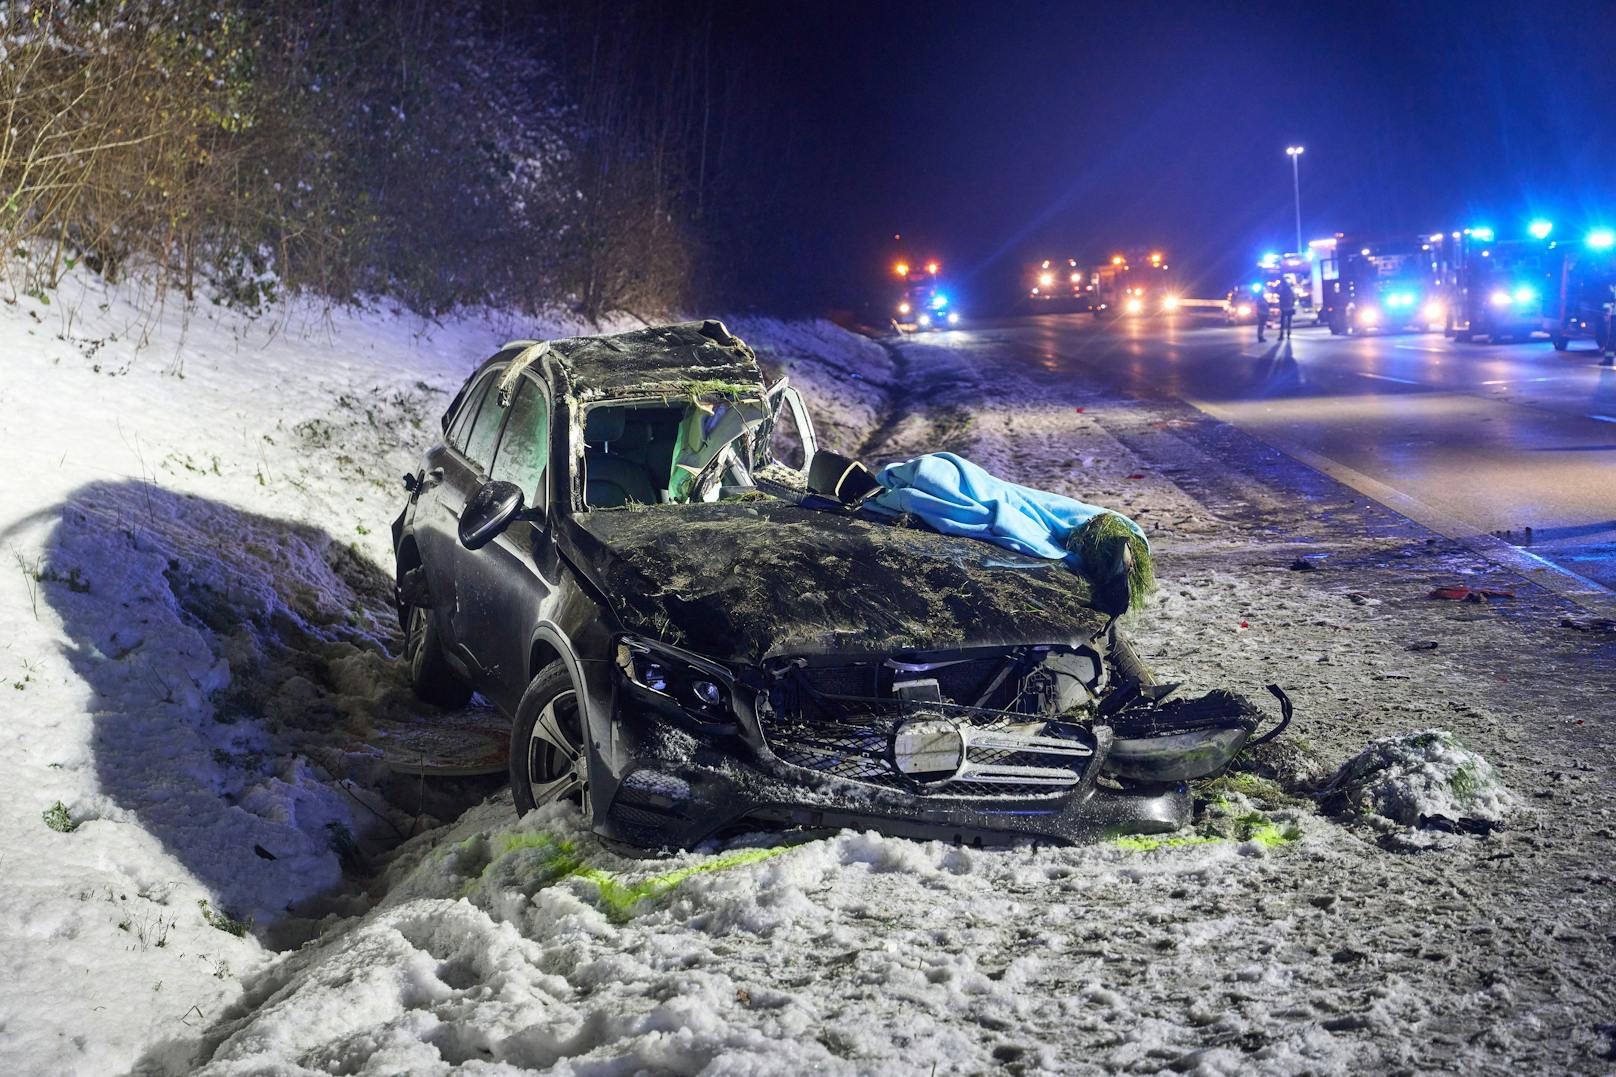 Nicht nur im Süden, auch in Rheinland-Pfalz kam es zu tödlichen Unfällen. Eine 30-jährige Frau starb auf der A3 bei Epgert als ihr Wagen auf der eisigen Fahrbahn gegen einen Laster rutschte.